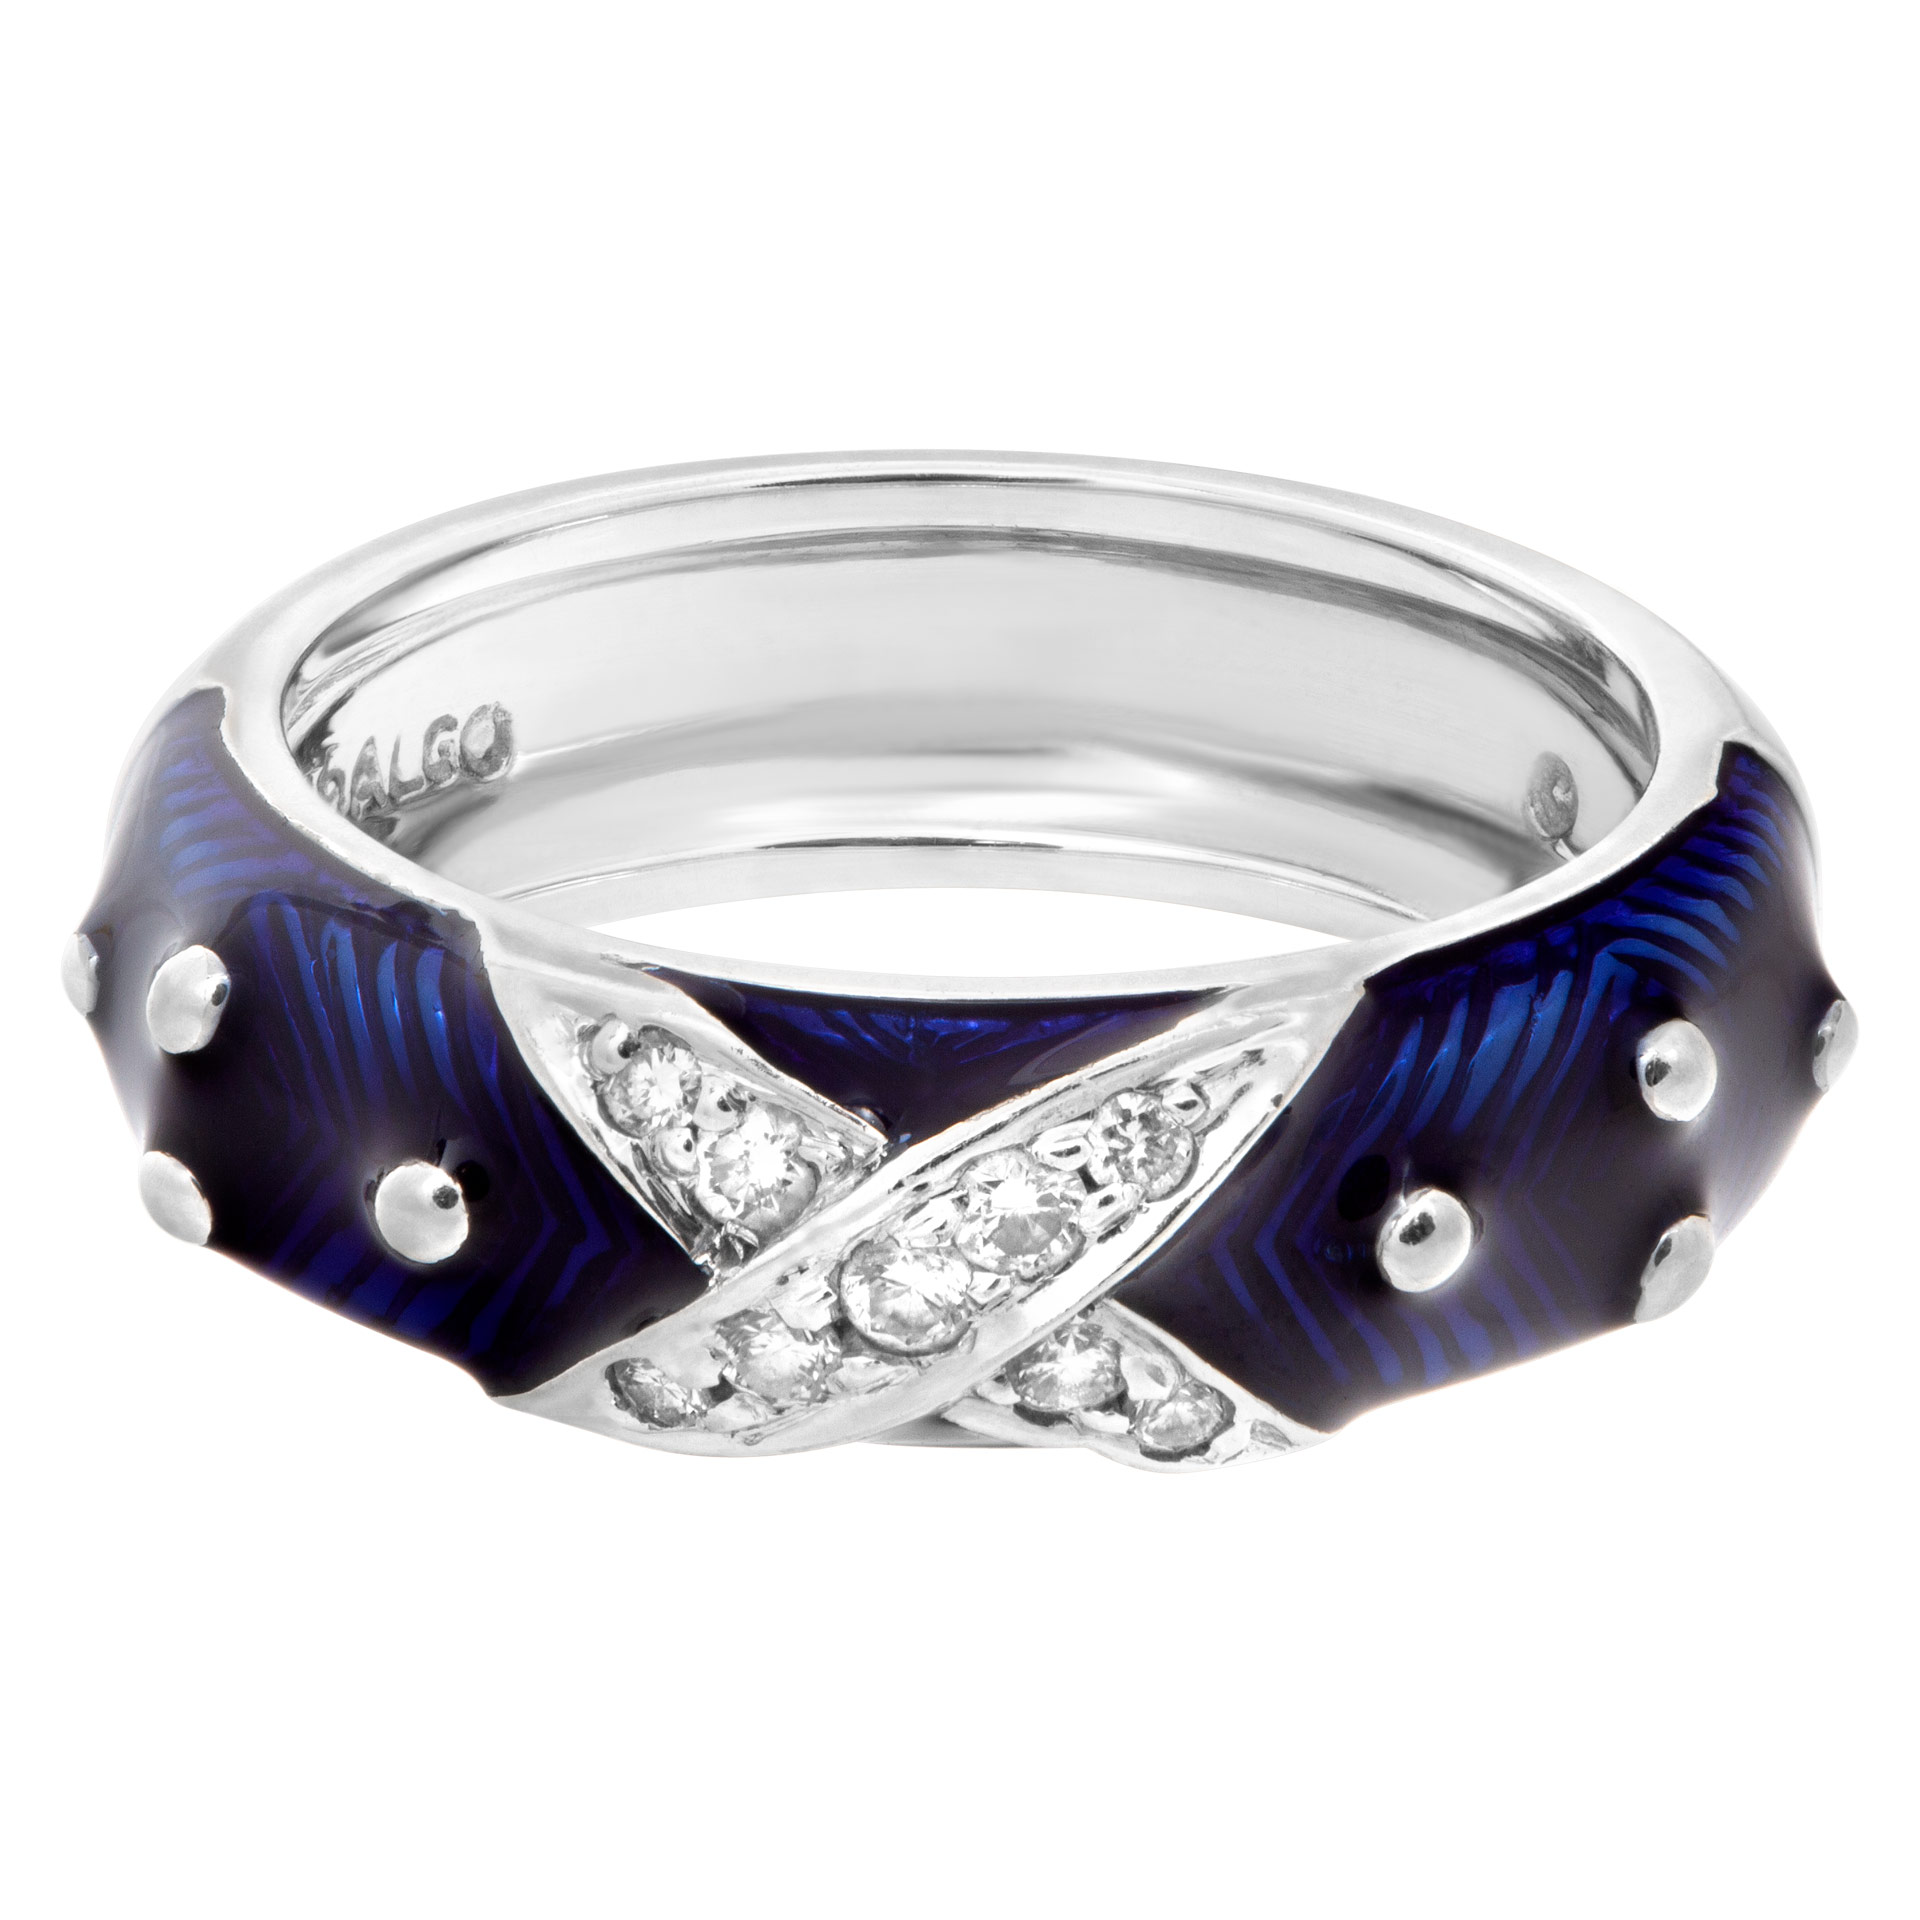 Diamond and blue enamel ring in 18k white gold